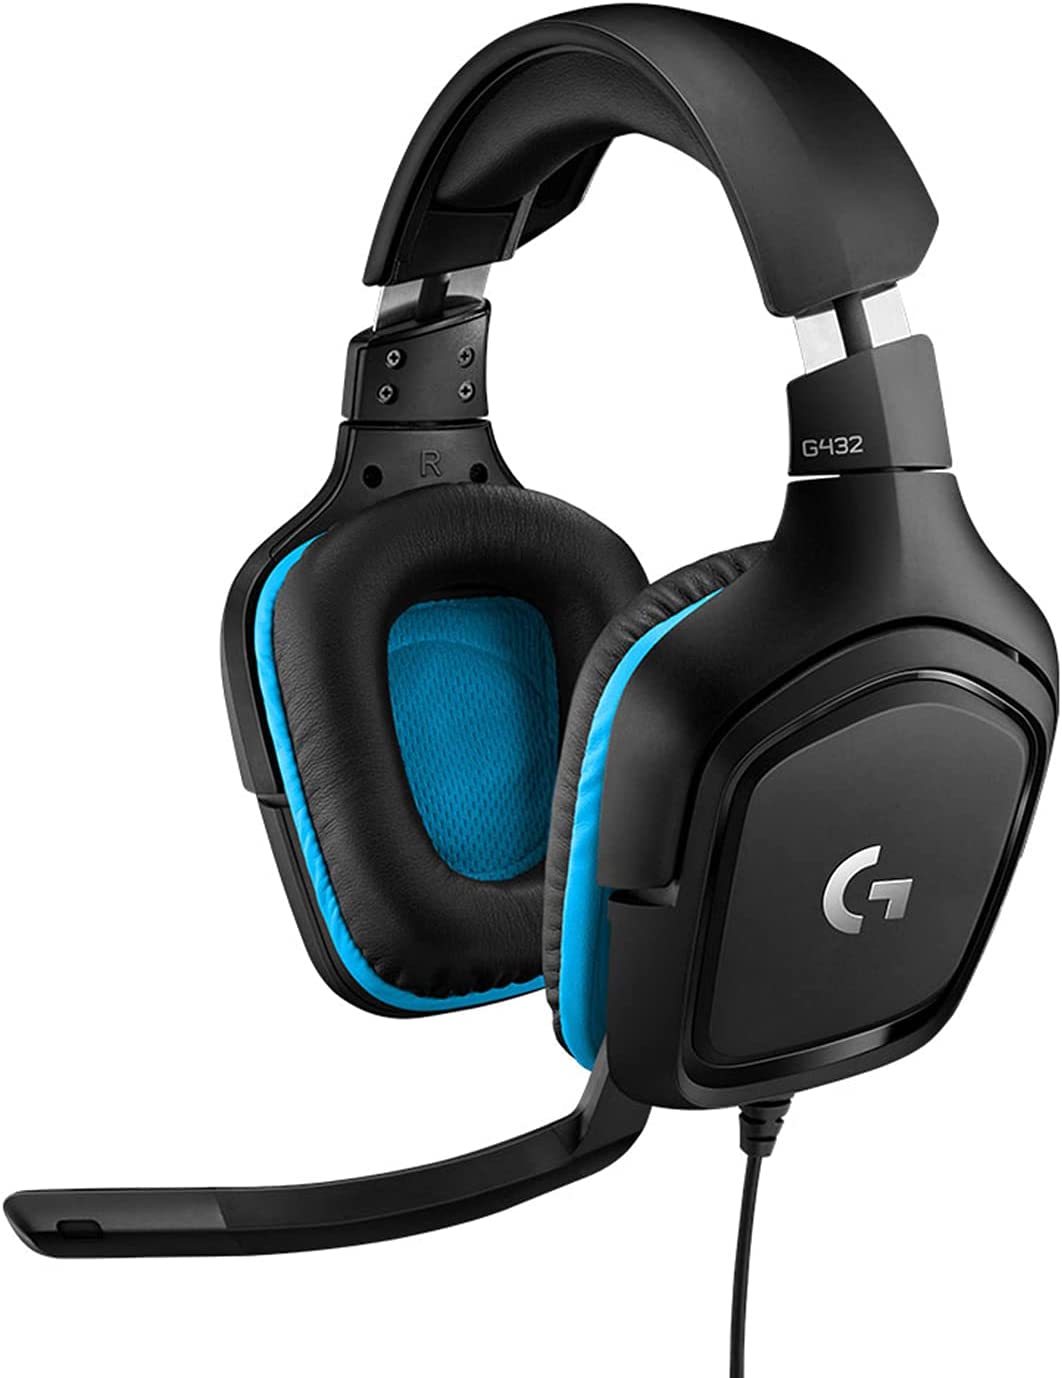 (G1) Logitech G432 wired gaming headset, 7.1 surround sound